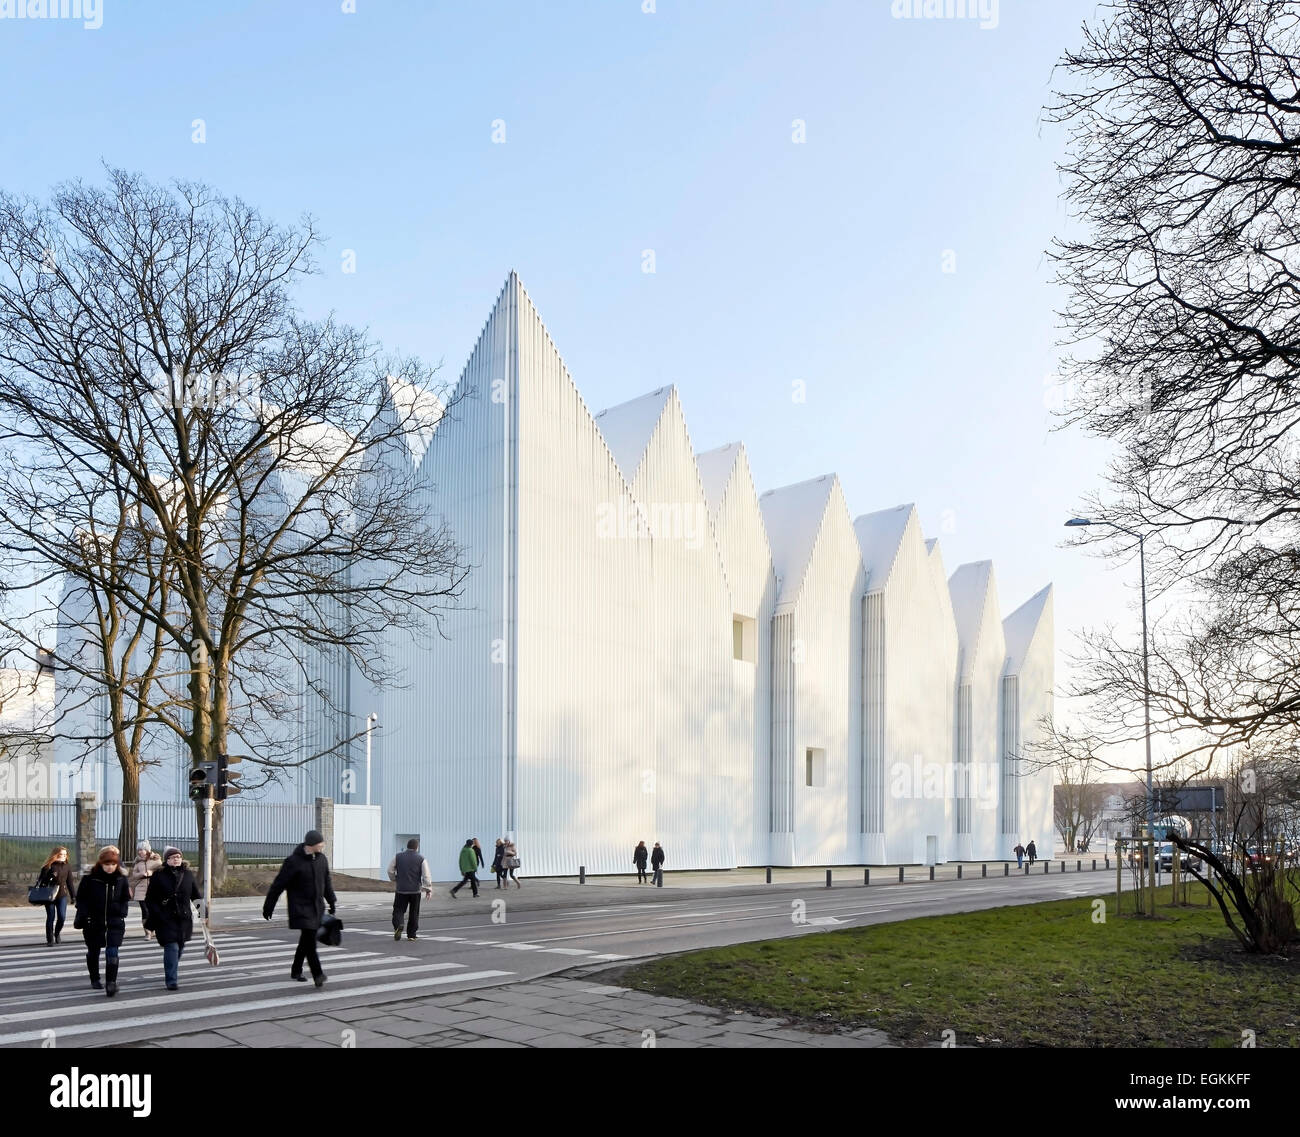 Salle philharmonique de Szczecin, Szczecin, Pologne. Architecte : Studio Barozzi Veiga, 2014. Vue de la façade avec toit en zigzag Banque D'Images